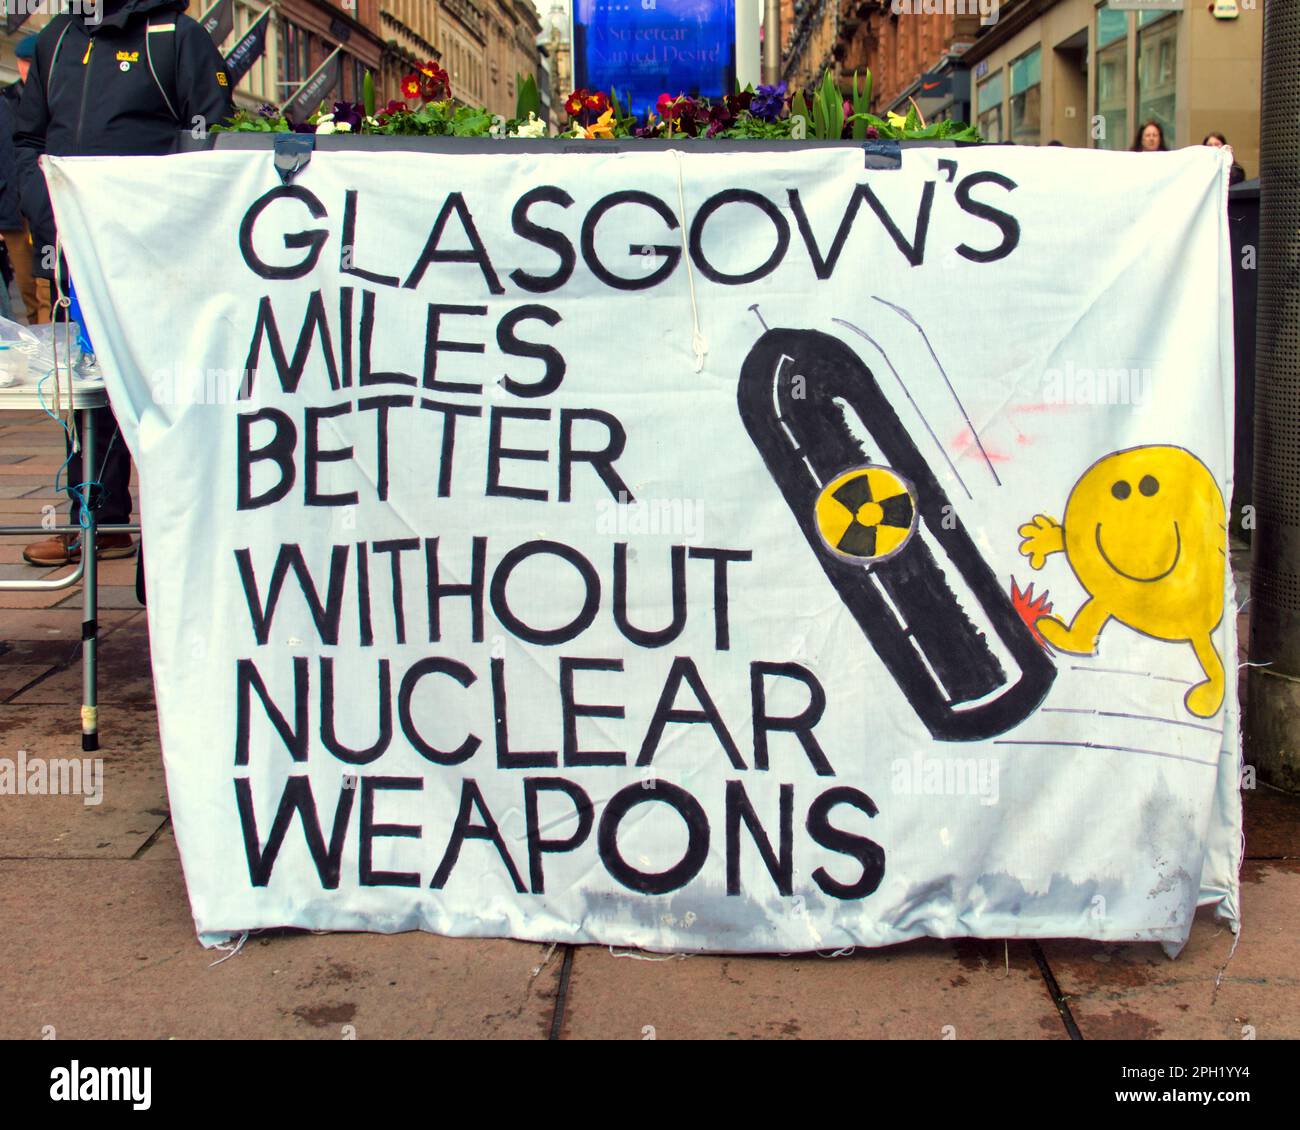 Glasgow CND sur sauchiehall Street nucléaires bannières nae nukes et Glasgow est miles mieux sans armes nucléaires Banque D'Images